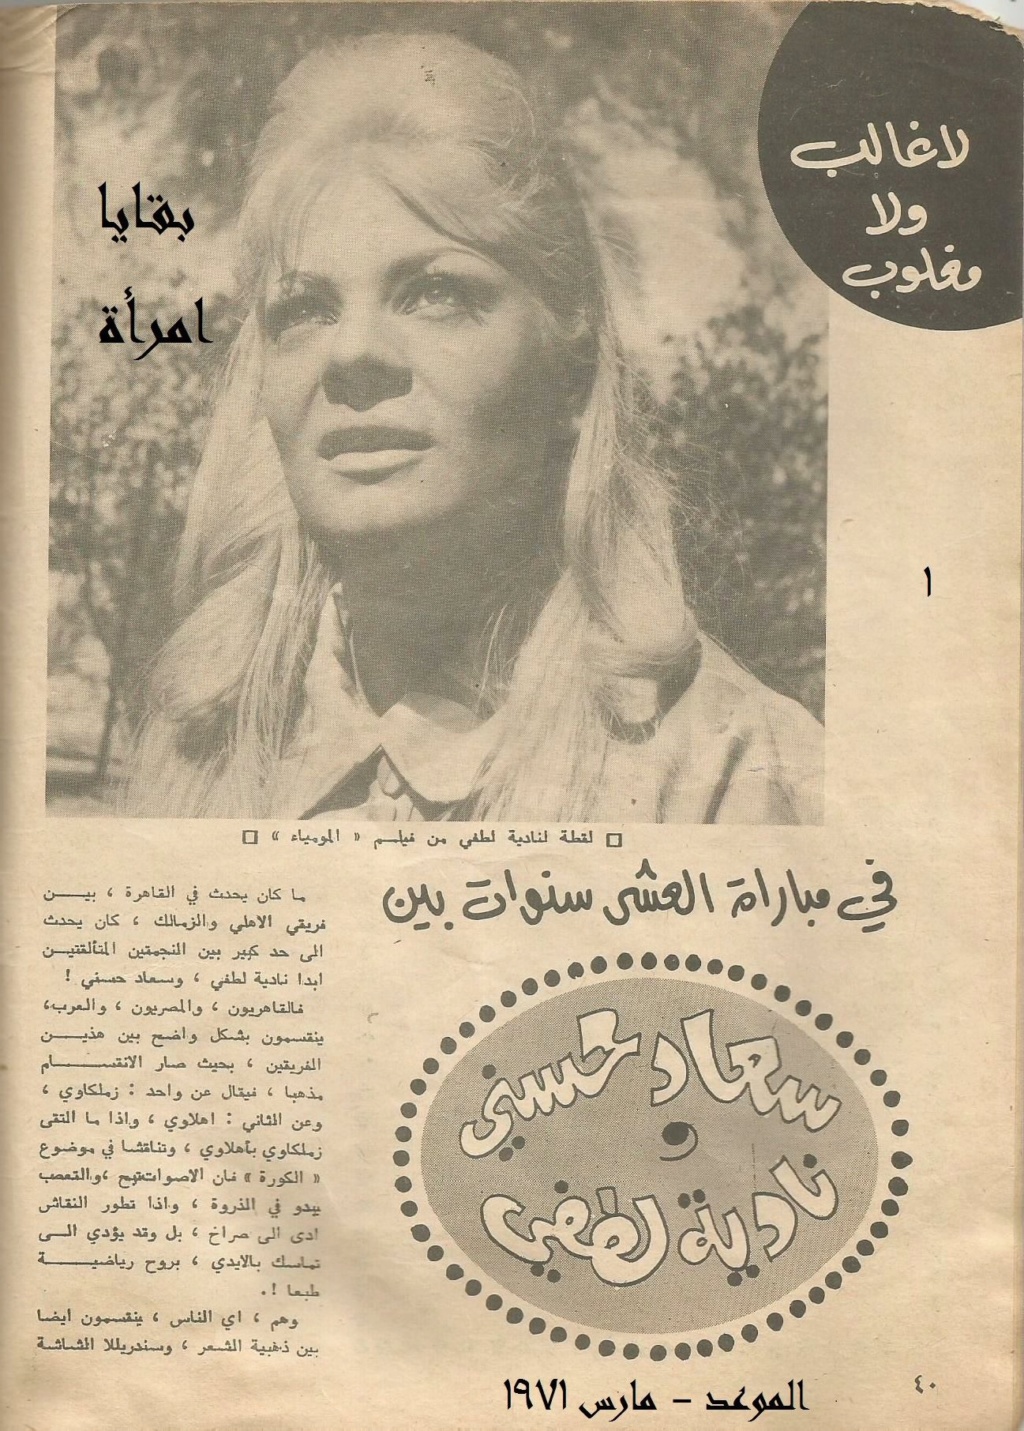 1971 - مقال صحفي : لاغالب ولا مغلوب في مباراة العشر سنوات بين سعاد حسني ونادية لطفي 1971 م 1216